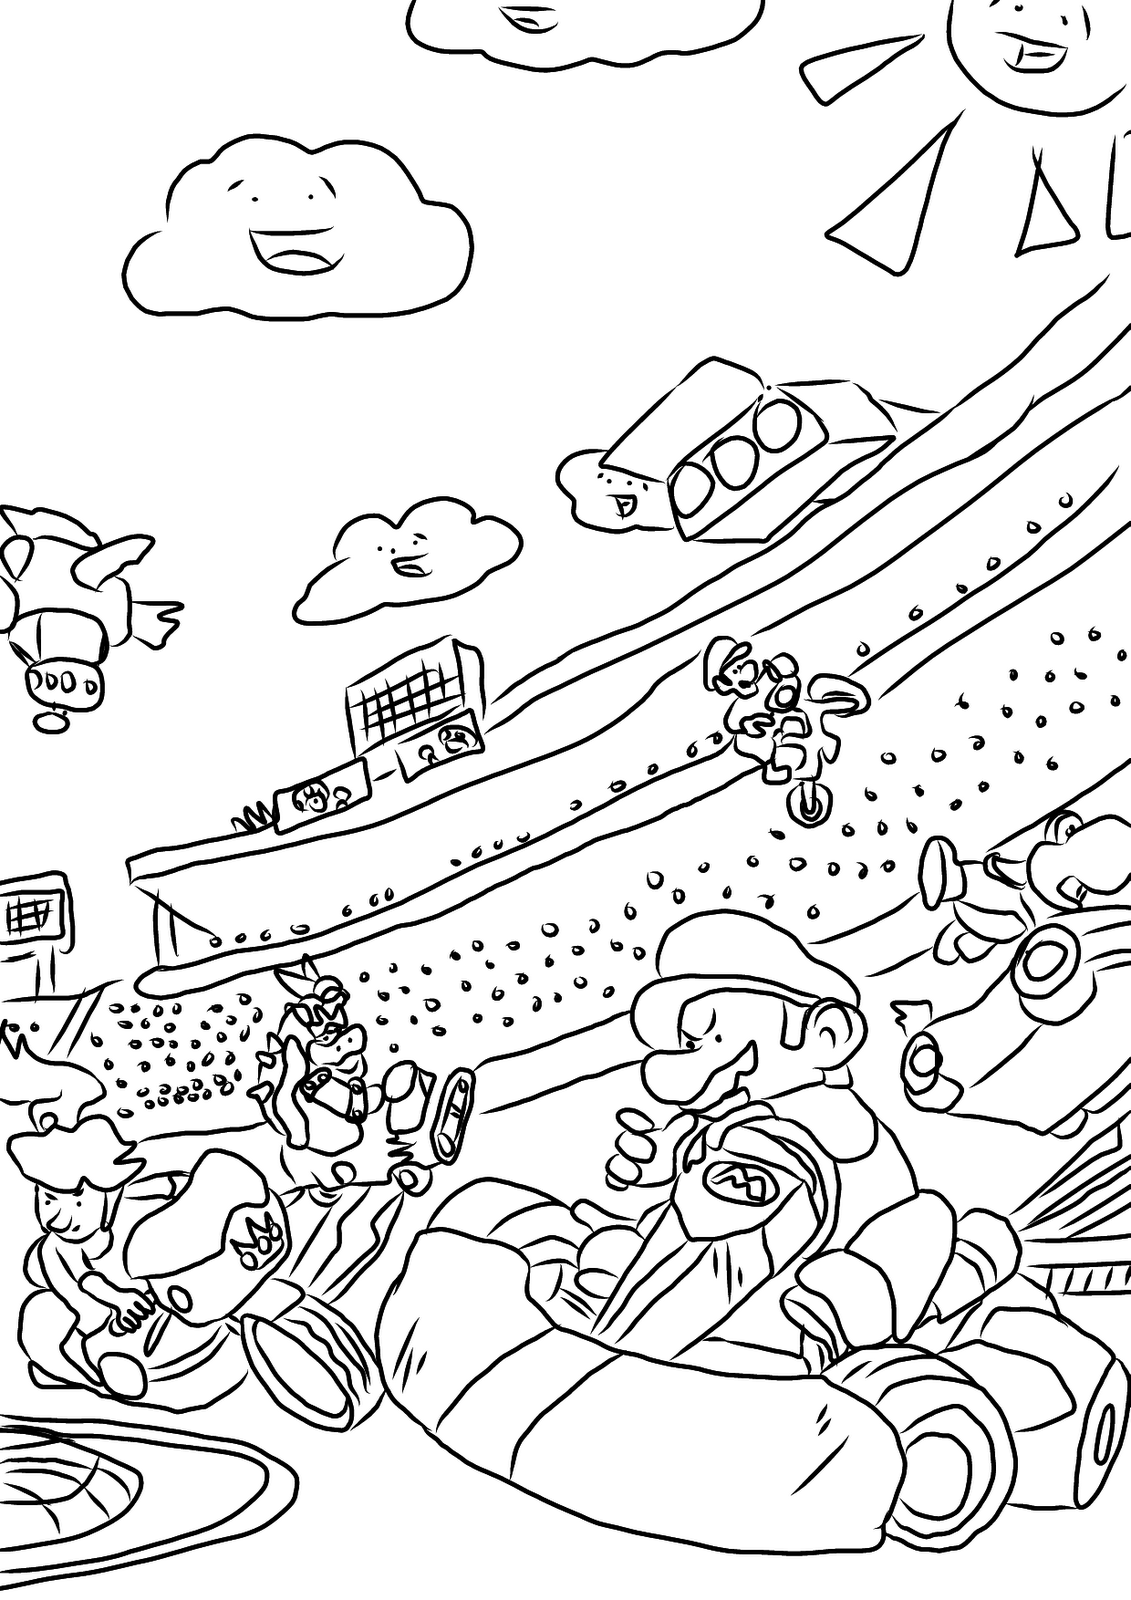 10 Pics of Mario Kart Koopa Coloring Pages - Super Mario Kart ...